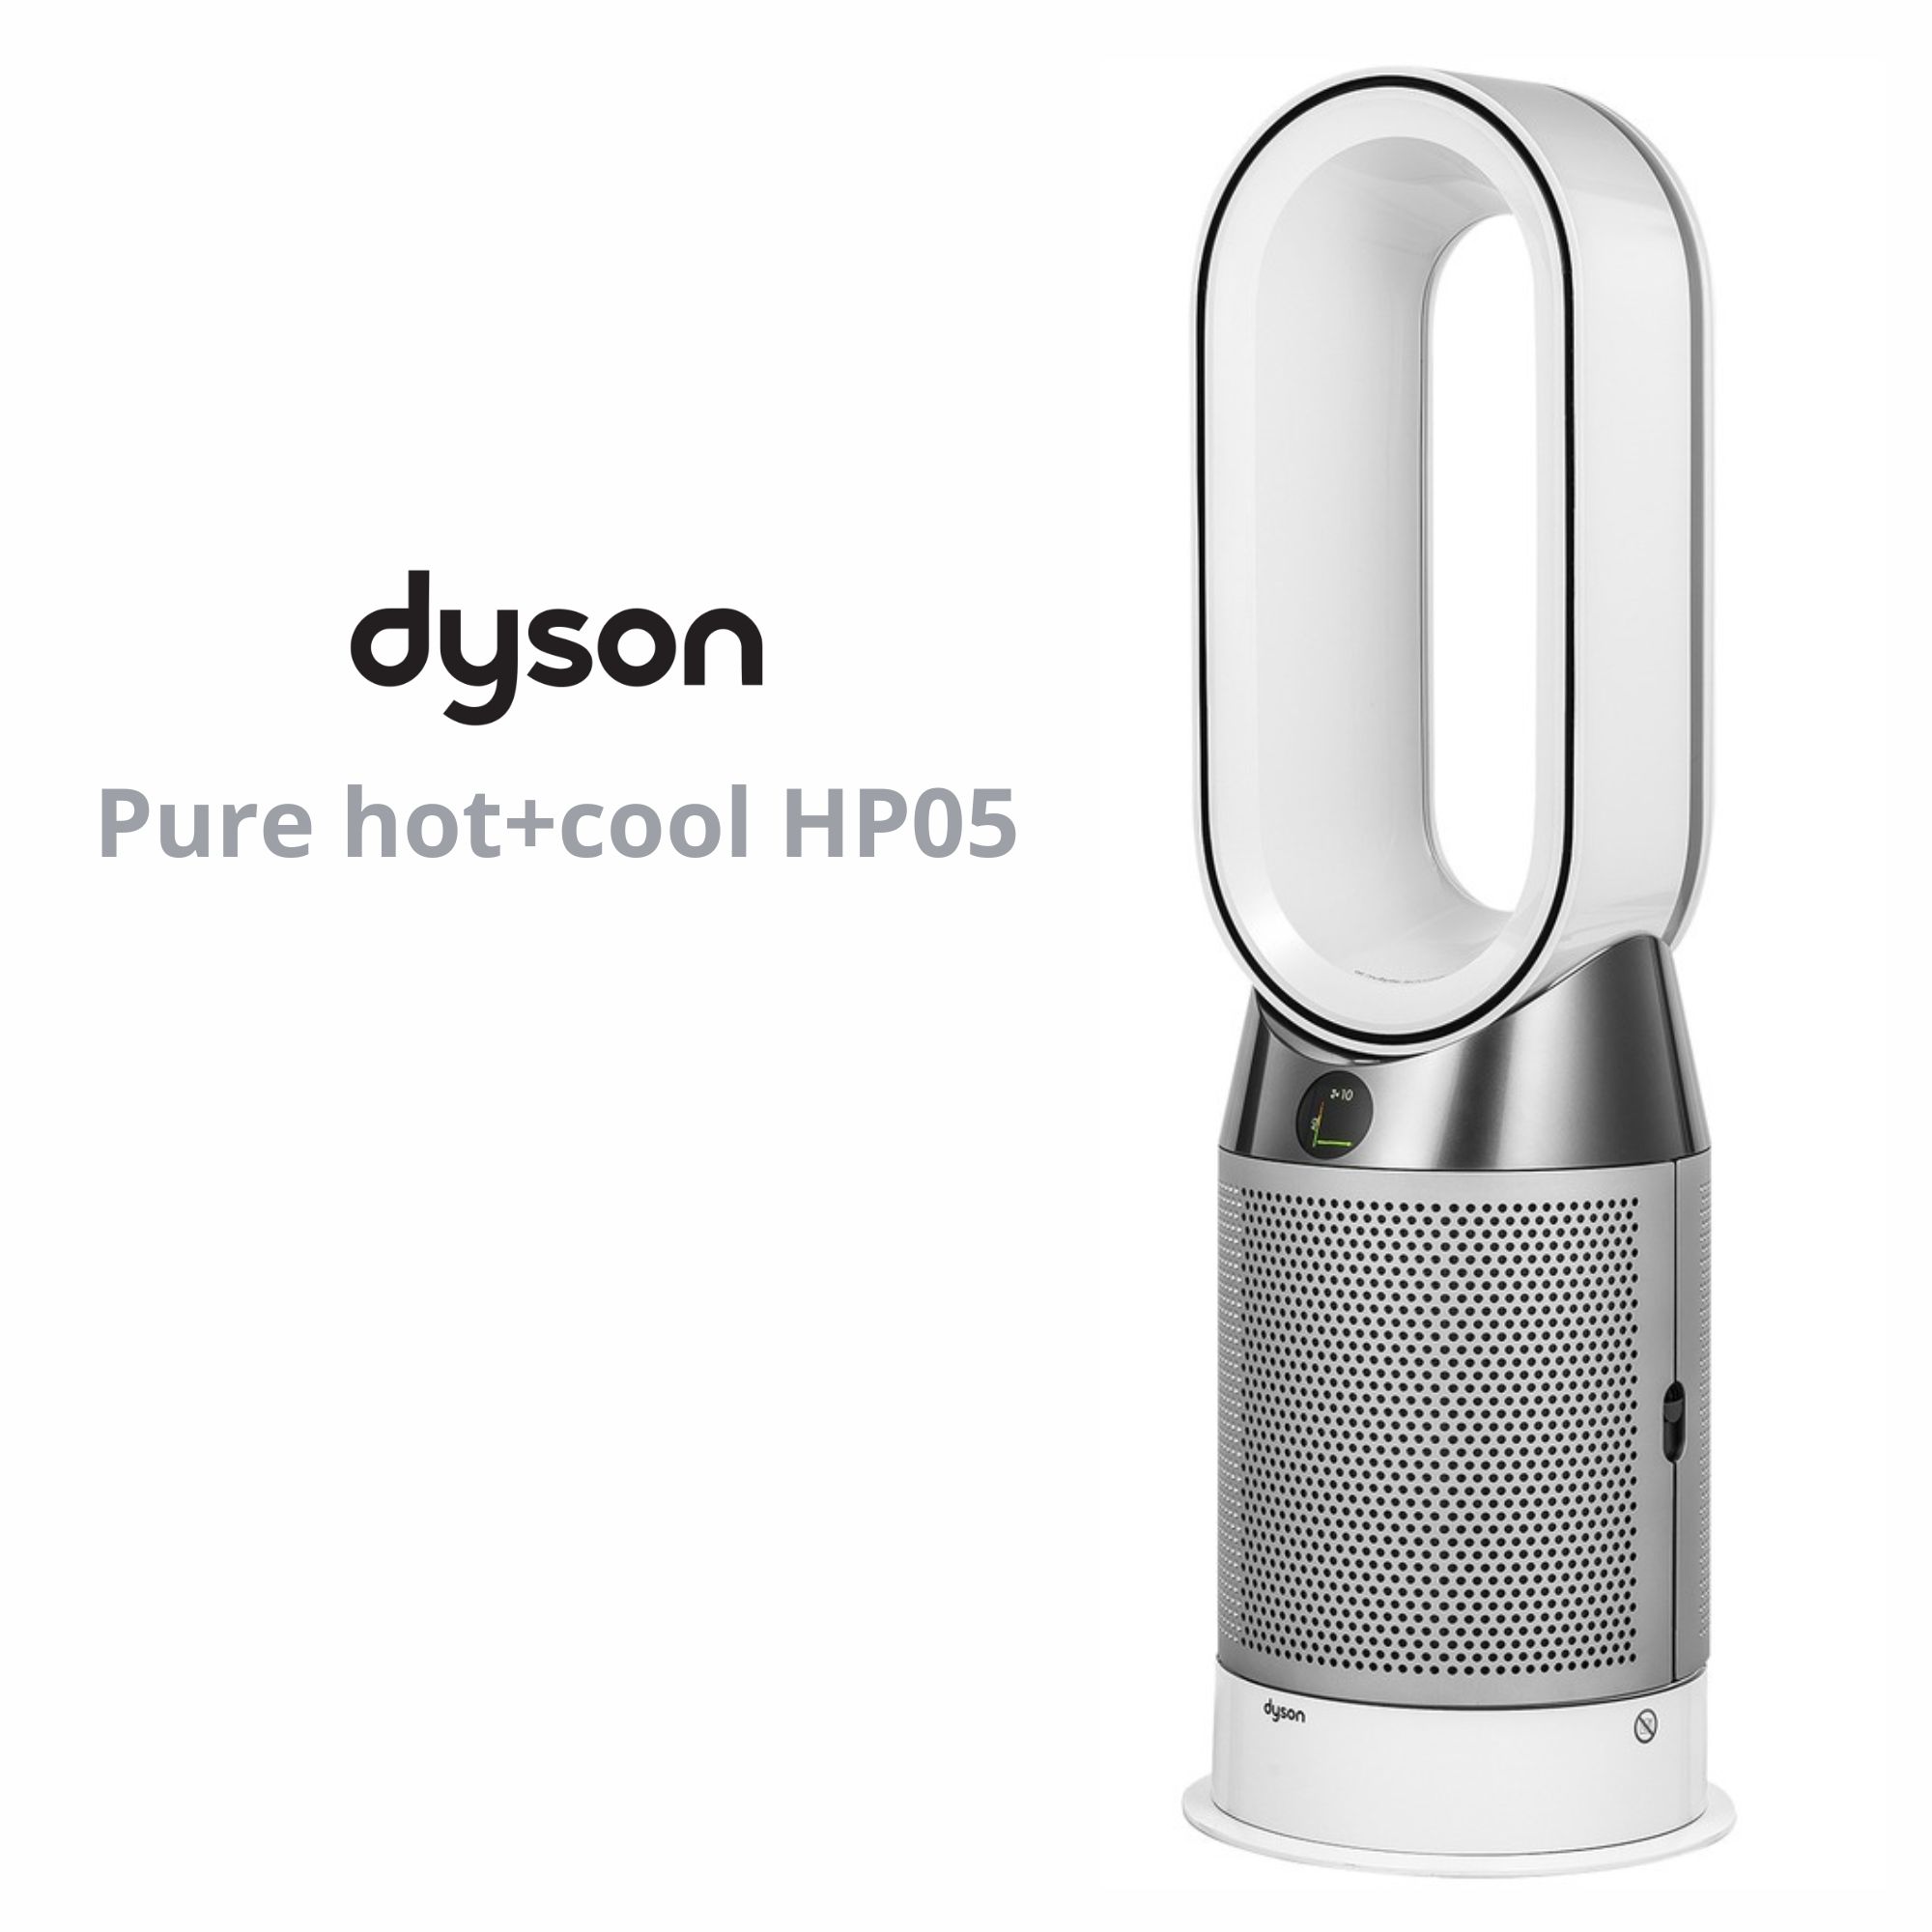 Воздуха дайсон купить. Dyson hp05 hot & cool. Очиститель воздуха Dyson hp05. Dyson Pure hot + cool™ hp05. Очиститель воздуха Dyson Pure cool.